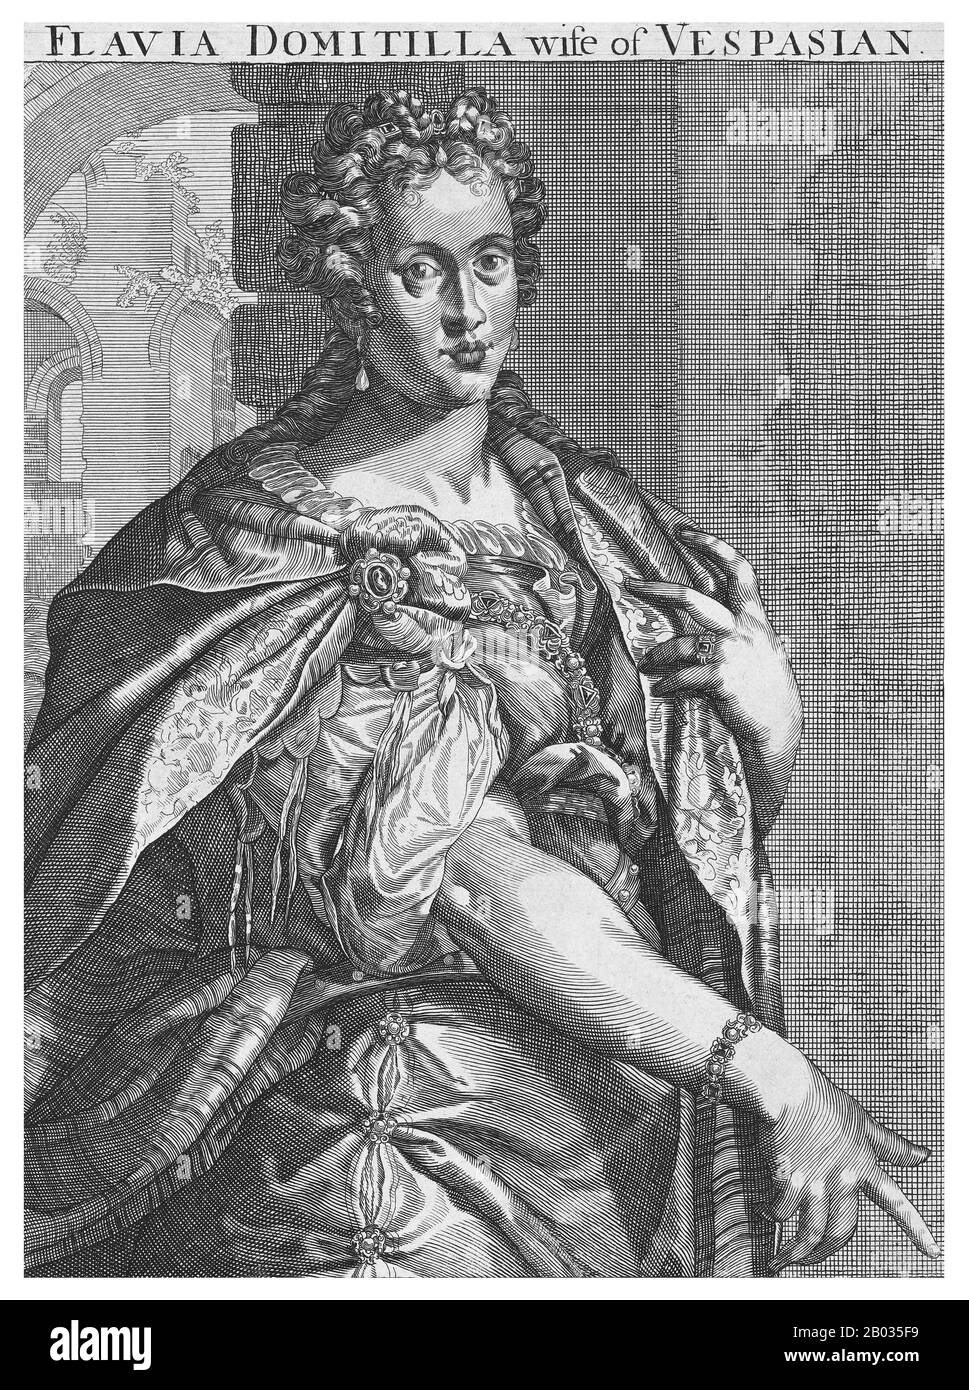 Flavia Domitilla Major (1. Jahrhundert), auch Domitilla der ältere genannt, war die erste Frau Vespasians. Sie war die Tochter von Flavius Liberalis, einem bescheidenen Quästor, und war vor ihrer Heirat mit Vespasian eine formelle Mätresse an einem afrikanischen Ritter. Sie heiratete einige Zeit um 38 v. Chr. Vespasian und war die Mutter zukünftiger Kaiser Titus und Domitian sowie Domitilla der Jüngere und Großmutter der Heiligen Flavia Domitilla. Sie starb, bevor Vespasian Kaiser wurde, einige Zeit um 65 CE. Stockfoto